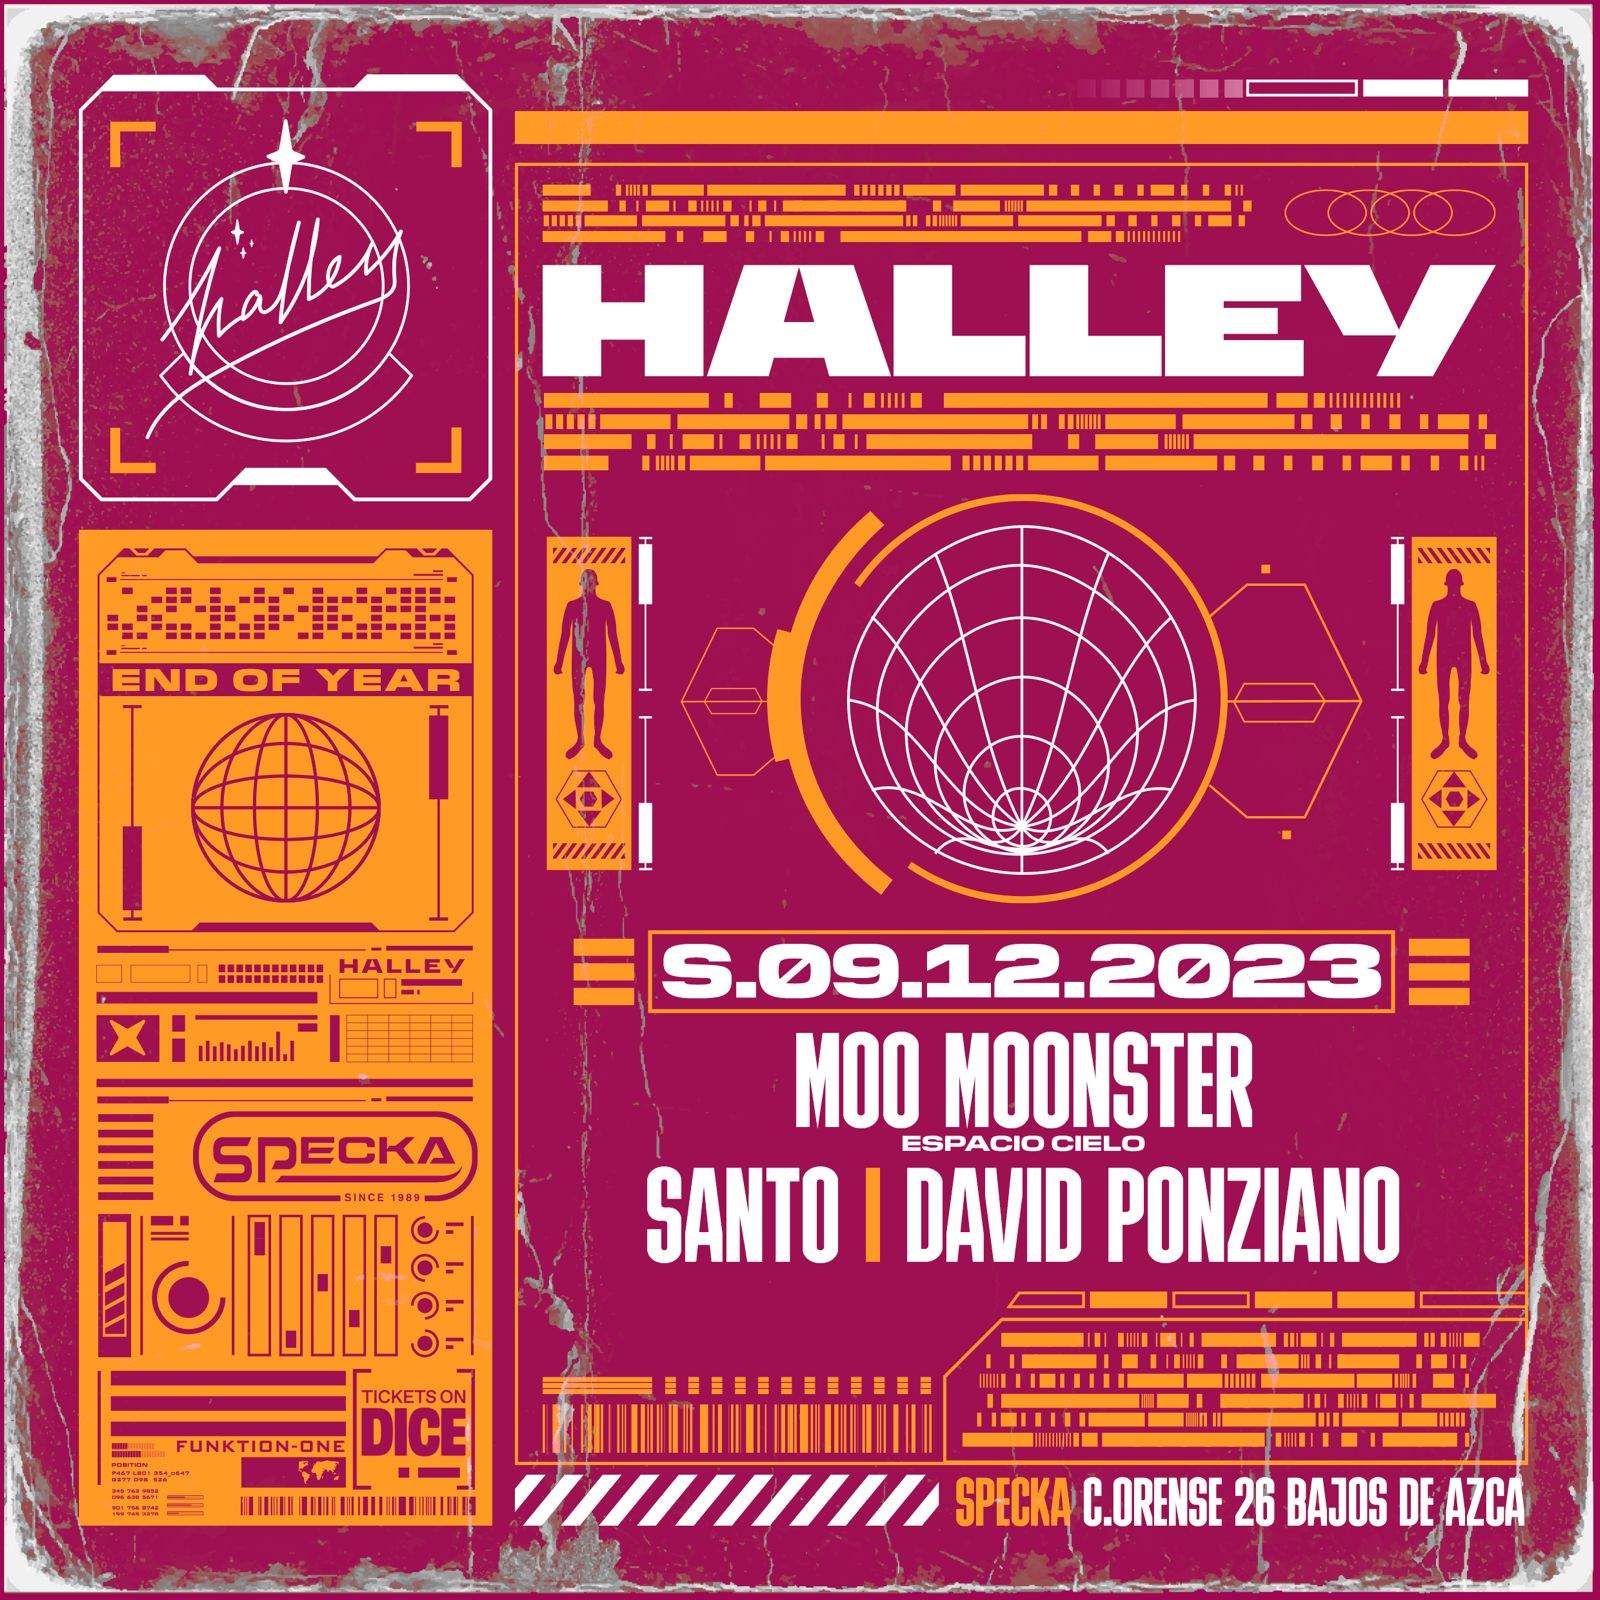 Moo Moonster + Santo + David Ponziano - Halley Club - Página frontal